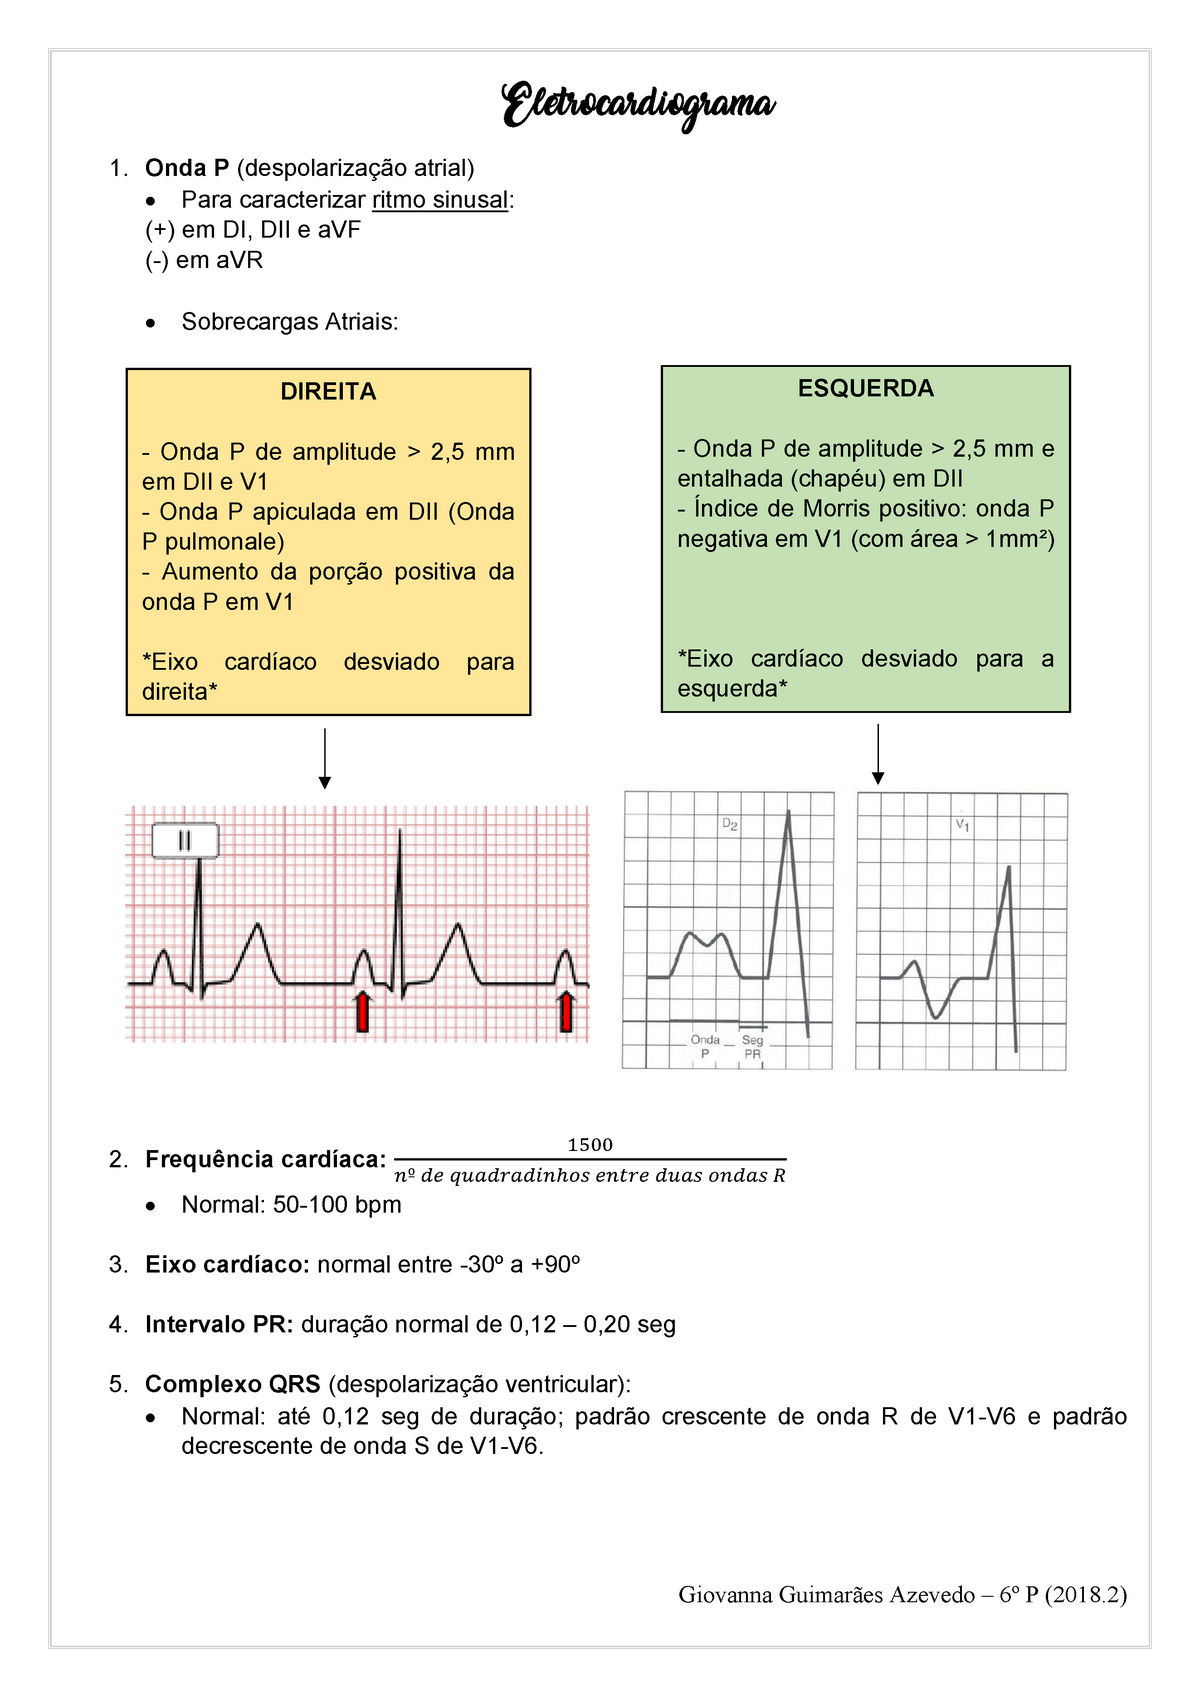 Resumos Pf Cardio Eletrocardiograma 1 Onda P Atrial Para Caracterizar Ritmo Sinusal Em Di 4588